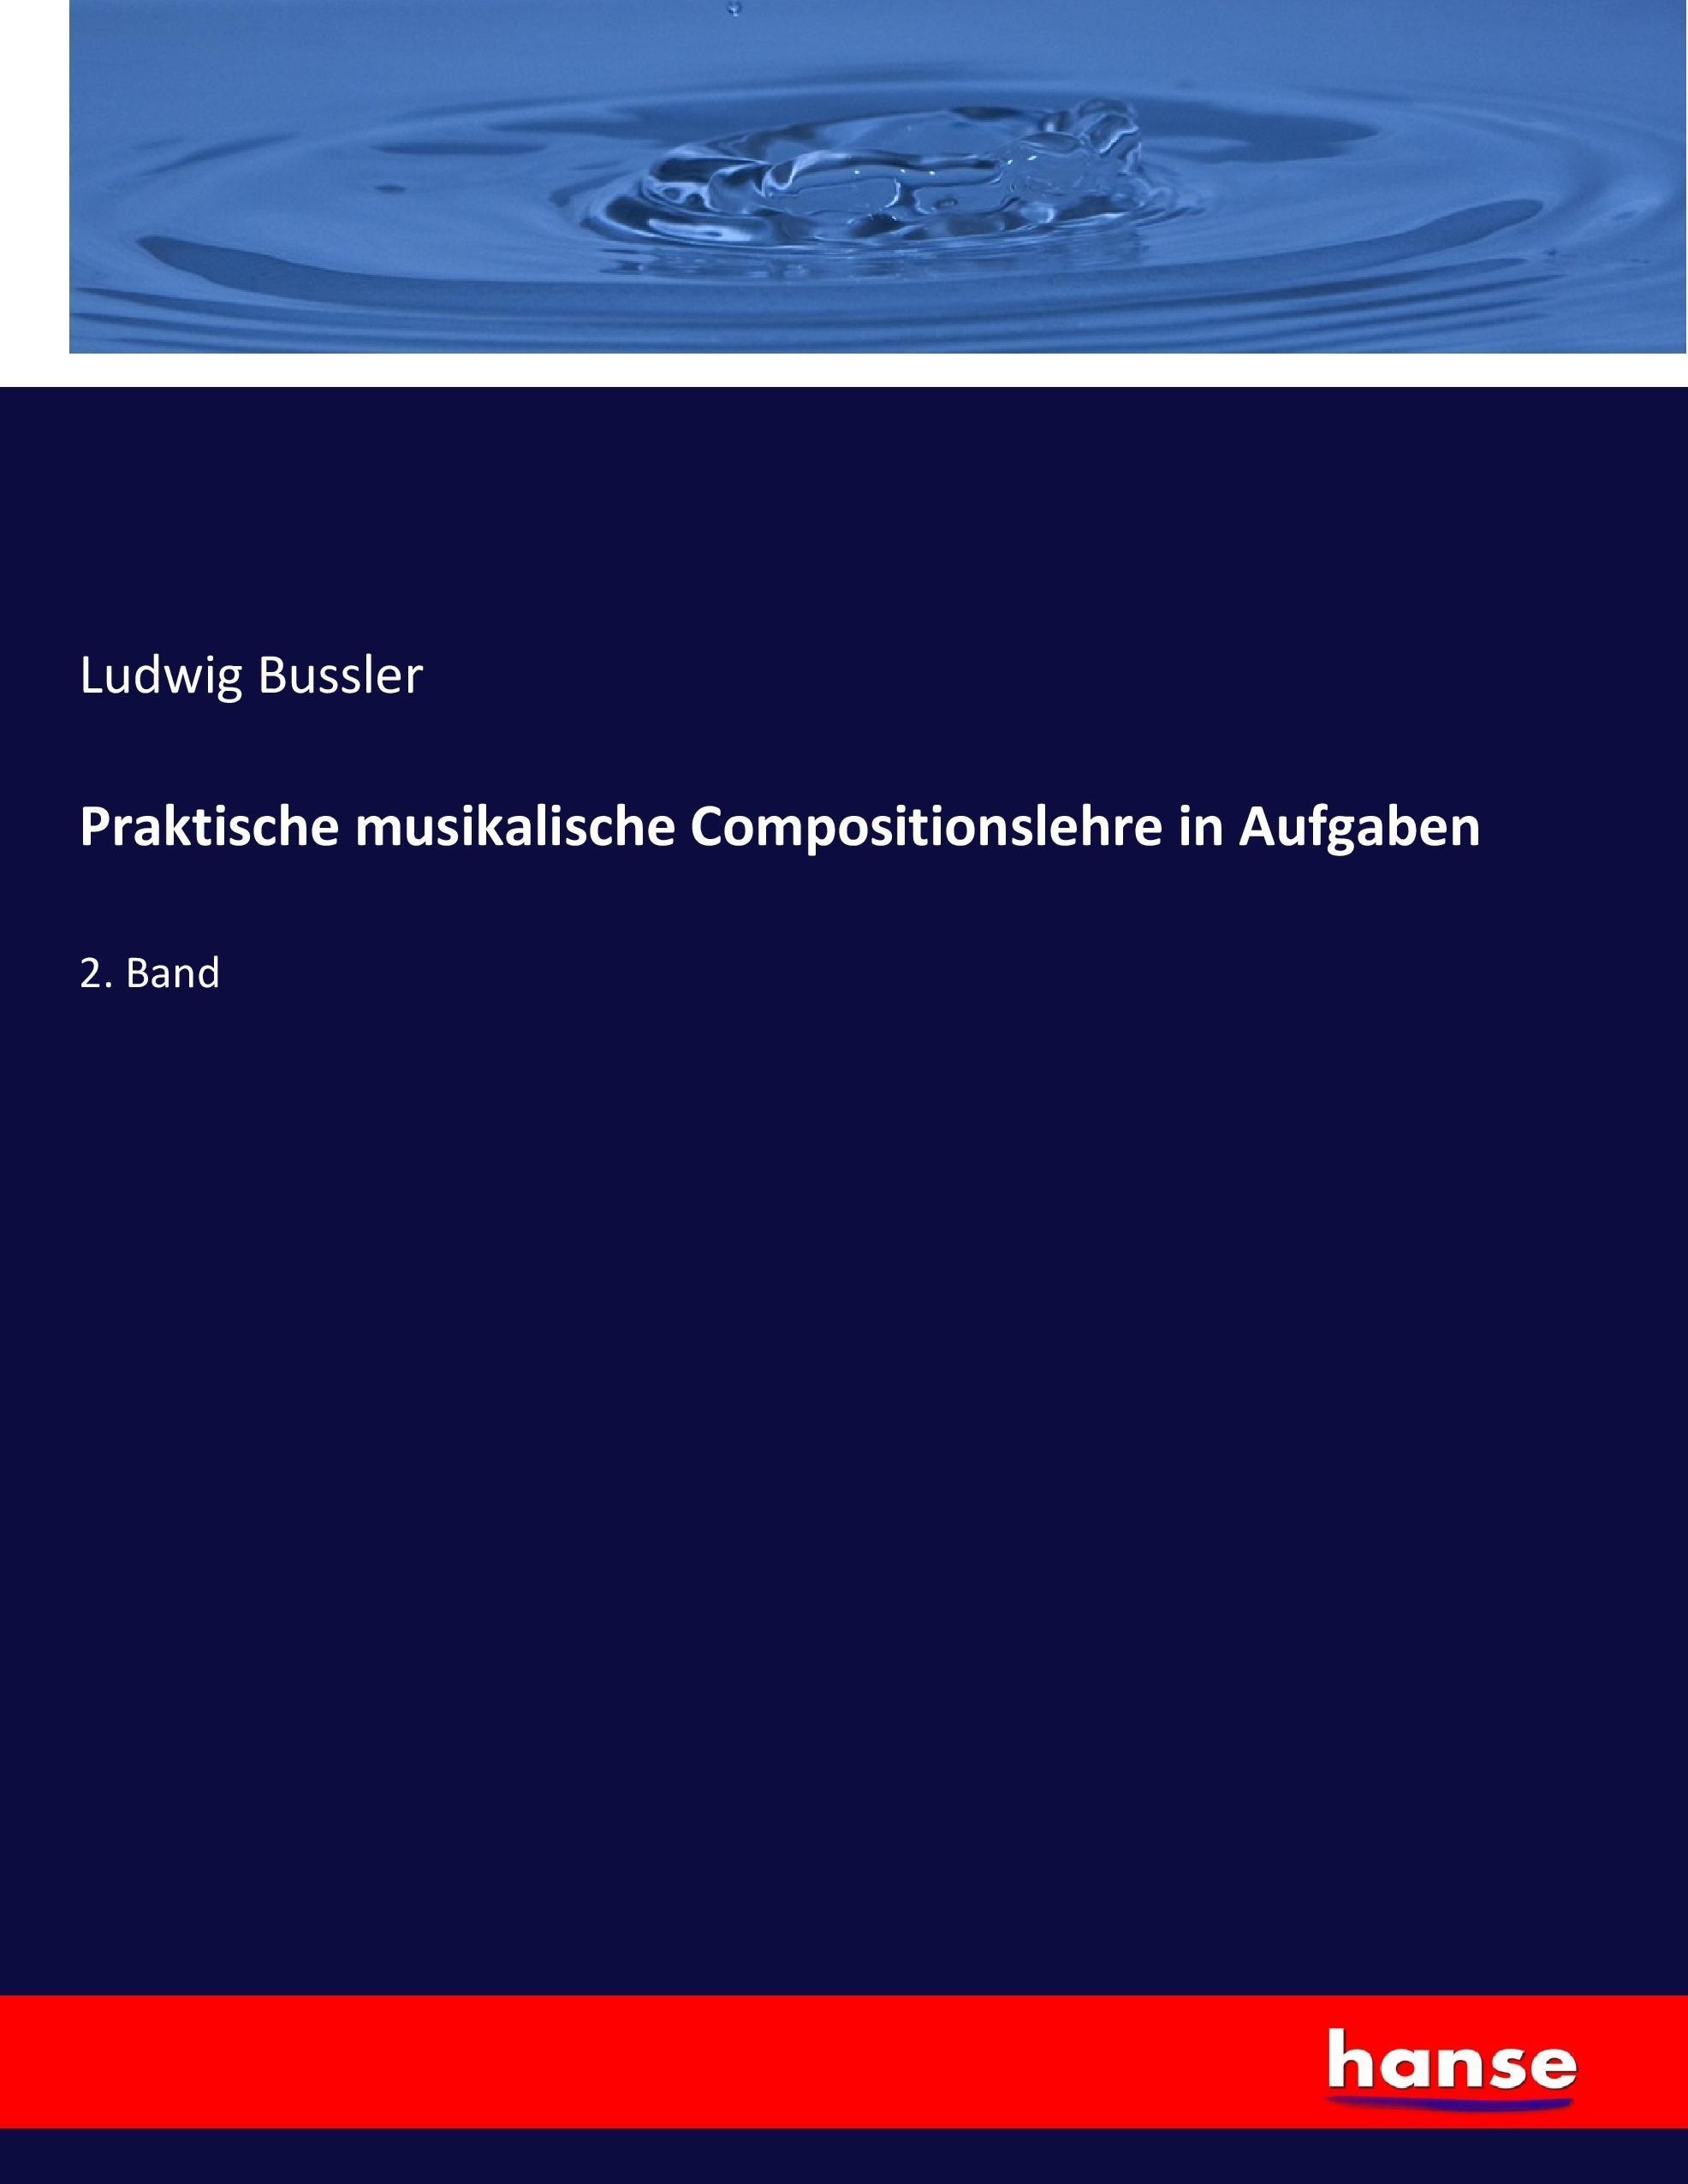 Praktische musikalische Compositionslehre in Aufgaben - Bussler, Ludwig